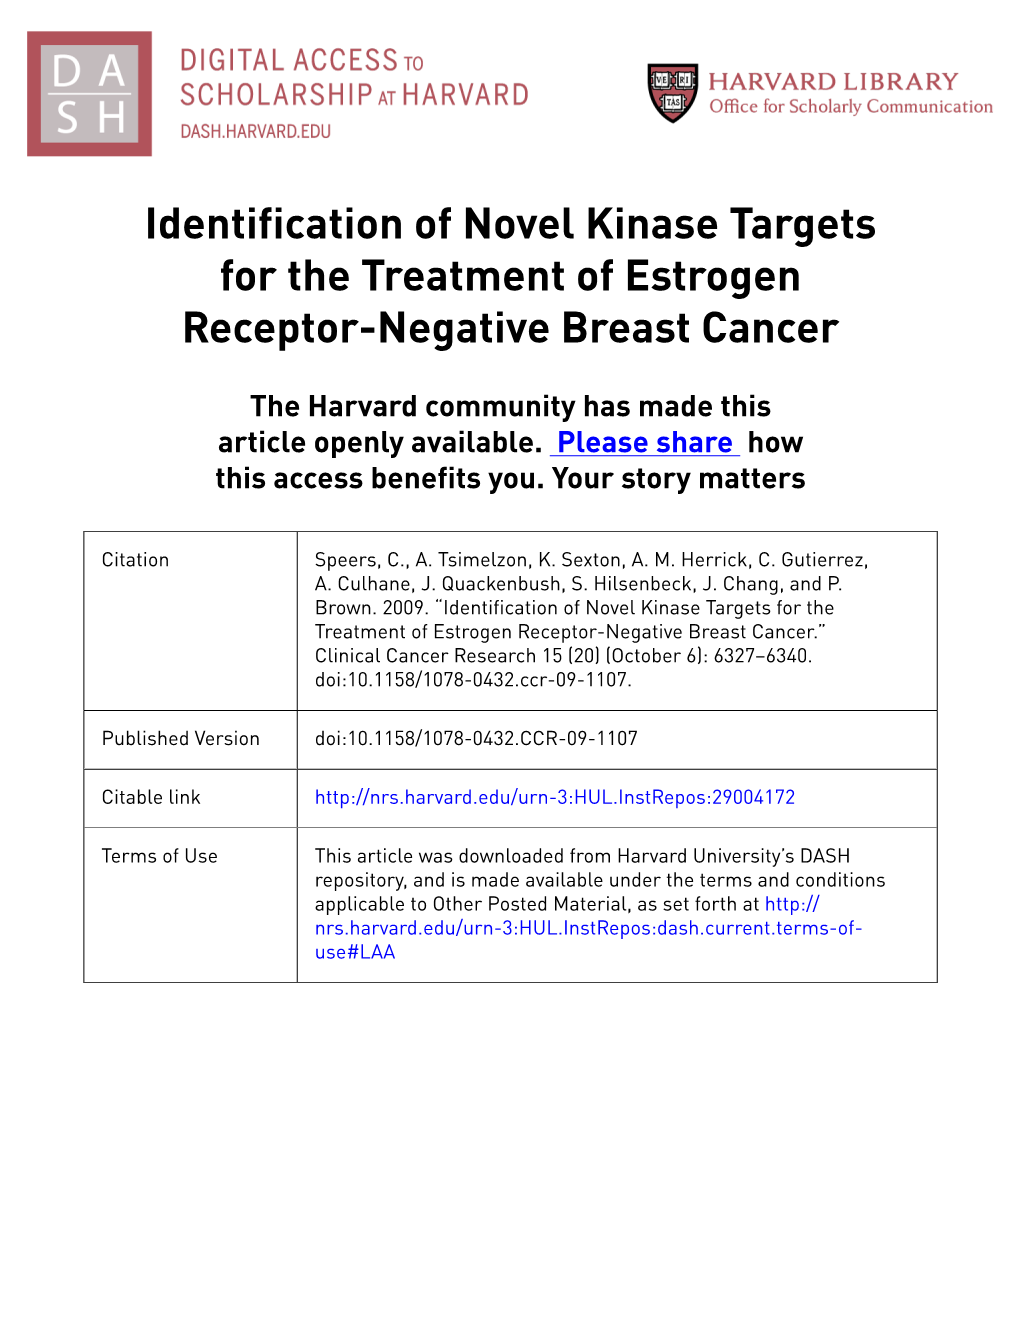 Identification of Novel Kinase Targets for the Treatment of Estrogen Receptor-Negative Breast Cancer